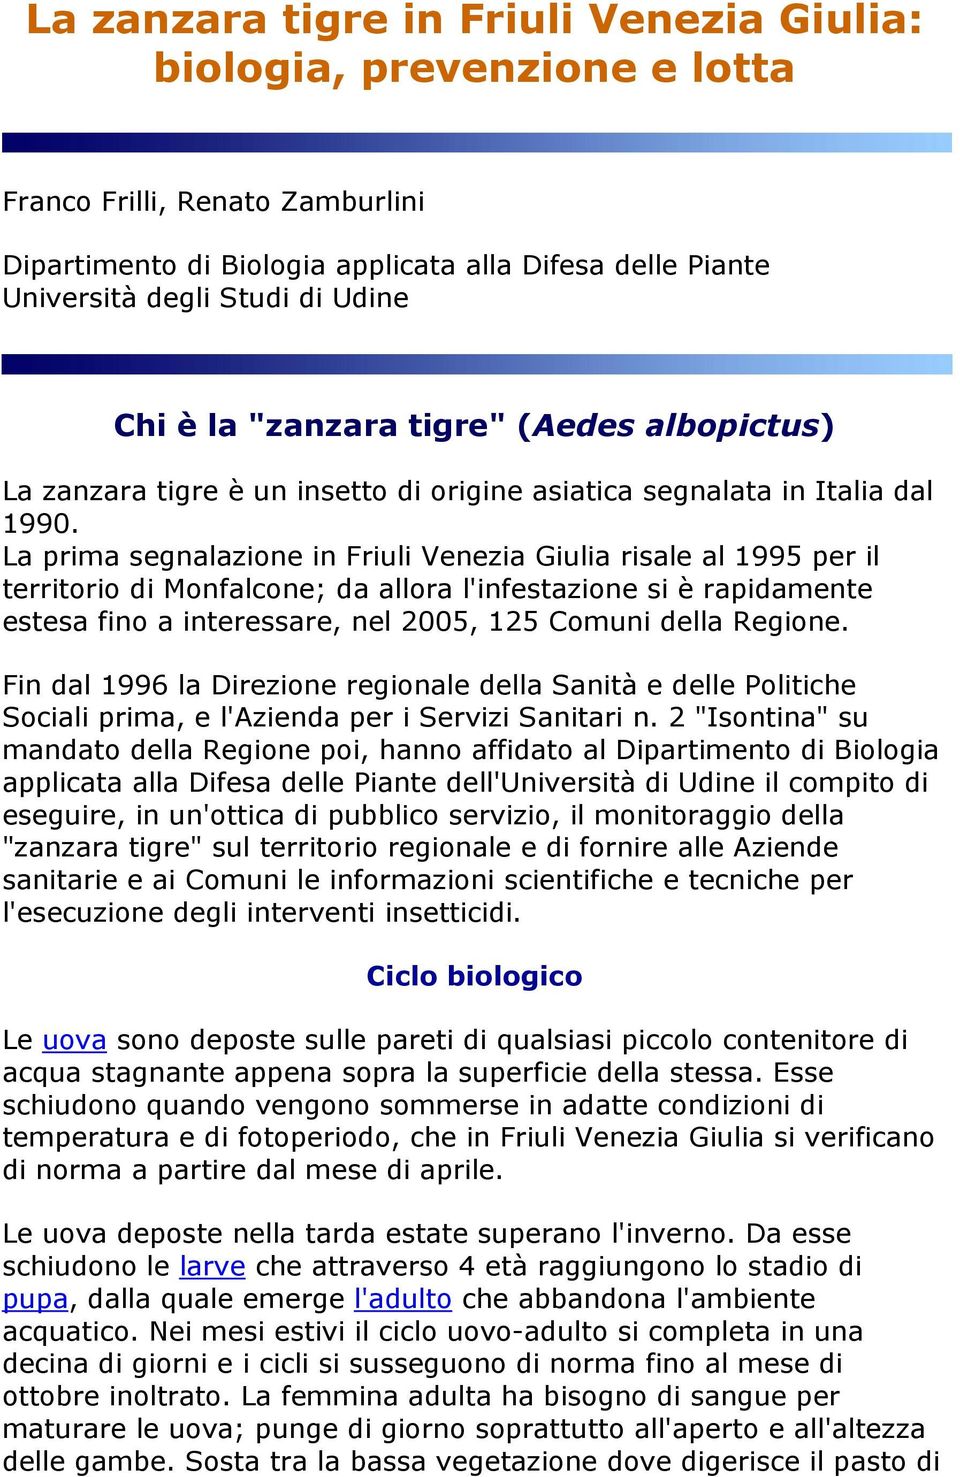 La prima segnalazine in Friuli Venezia Giulia risale al 1995 per il territri di Mnfalcne; da allra l'infestazine si è rapidamente estesa fin a interessare, nel 2005, 125 Cmuni della Regine.